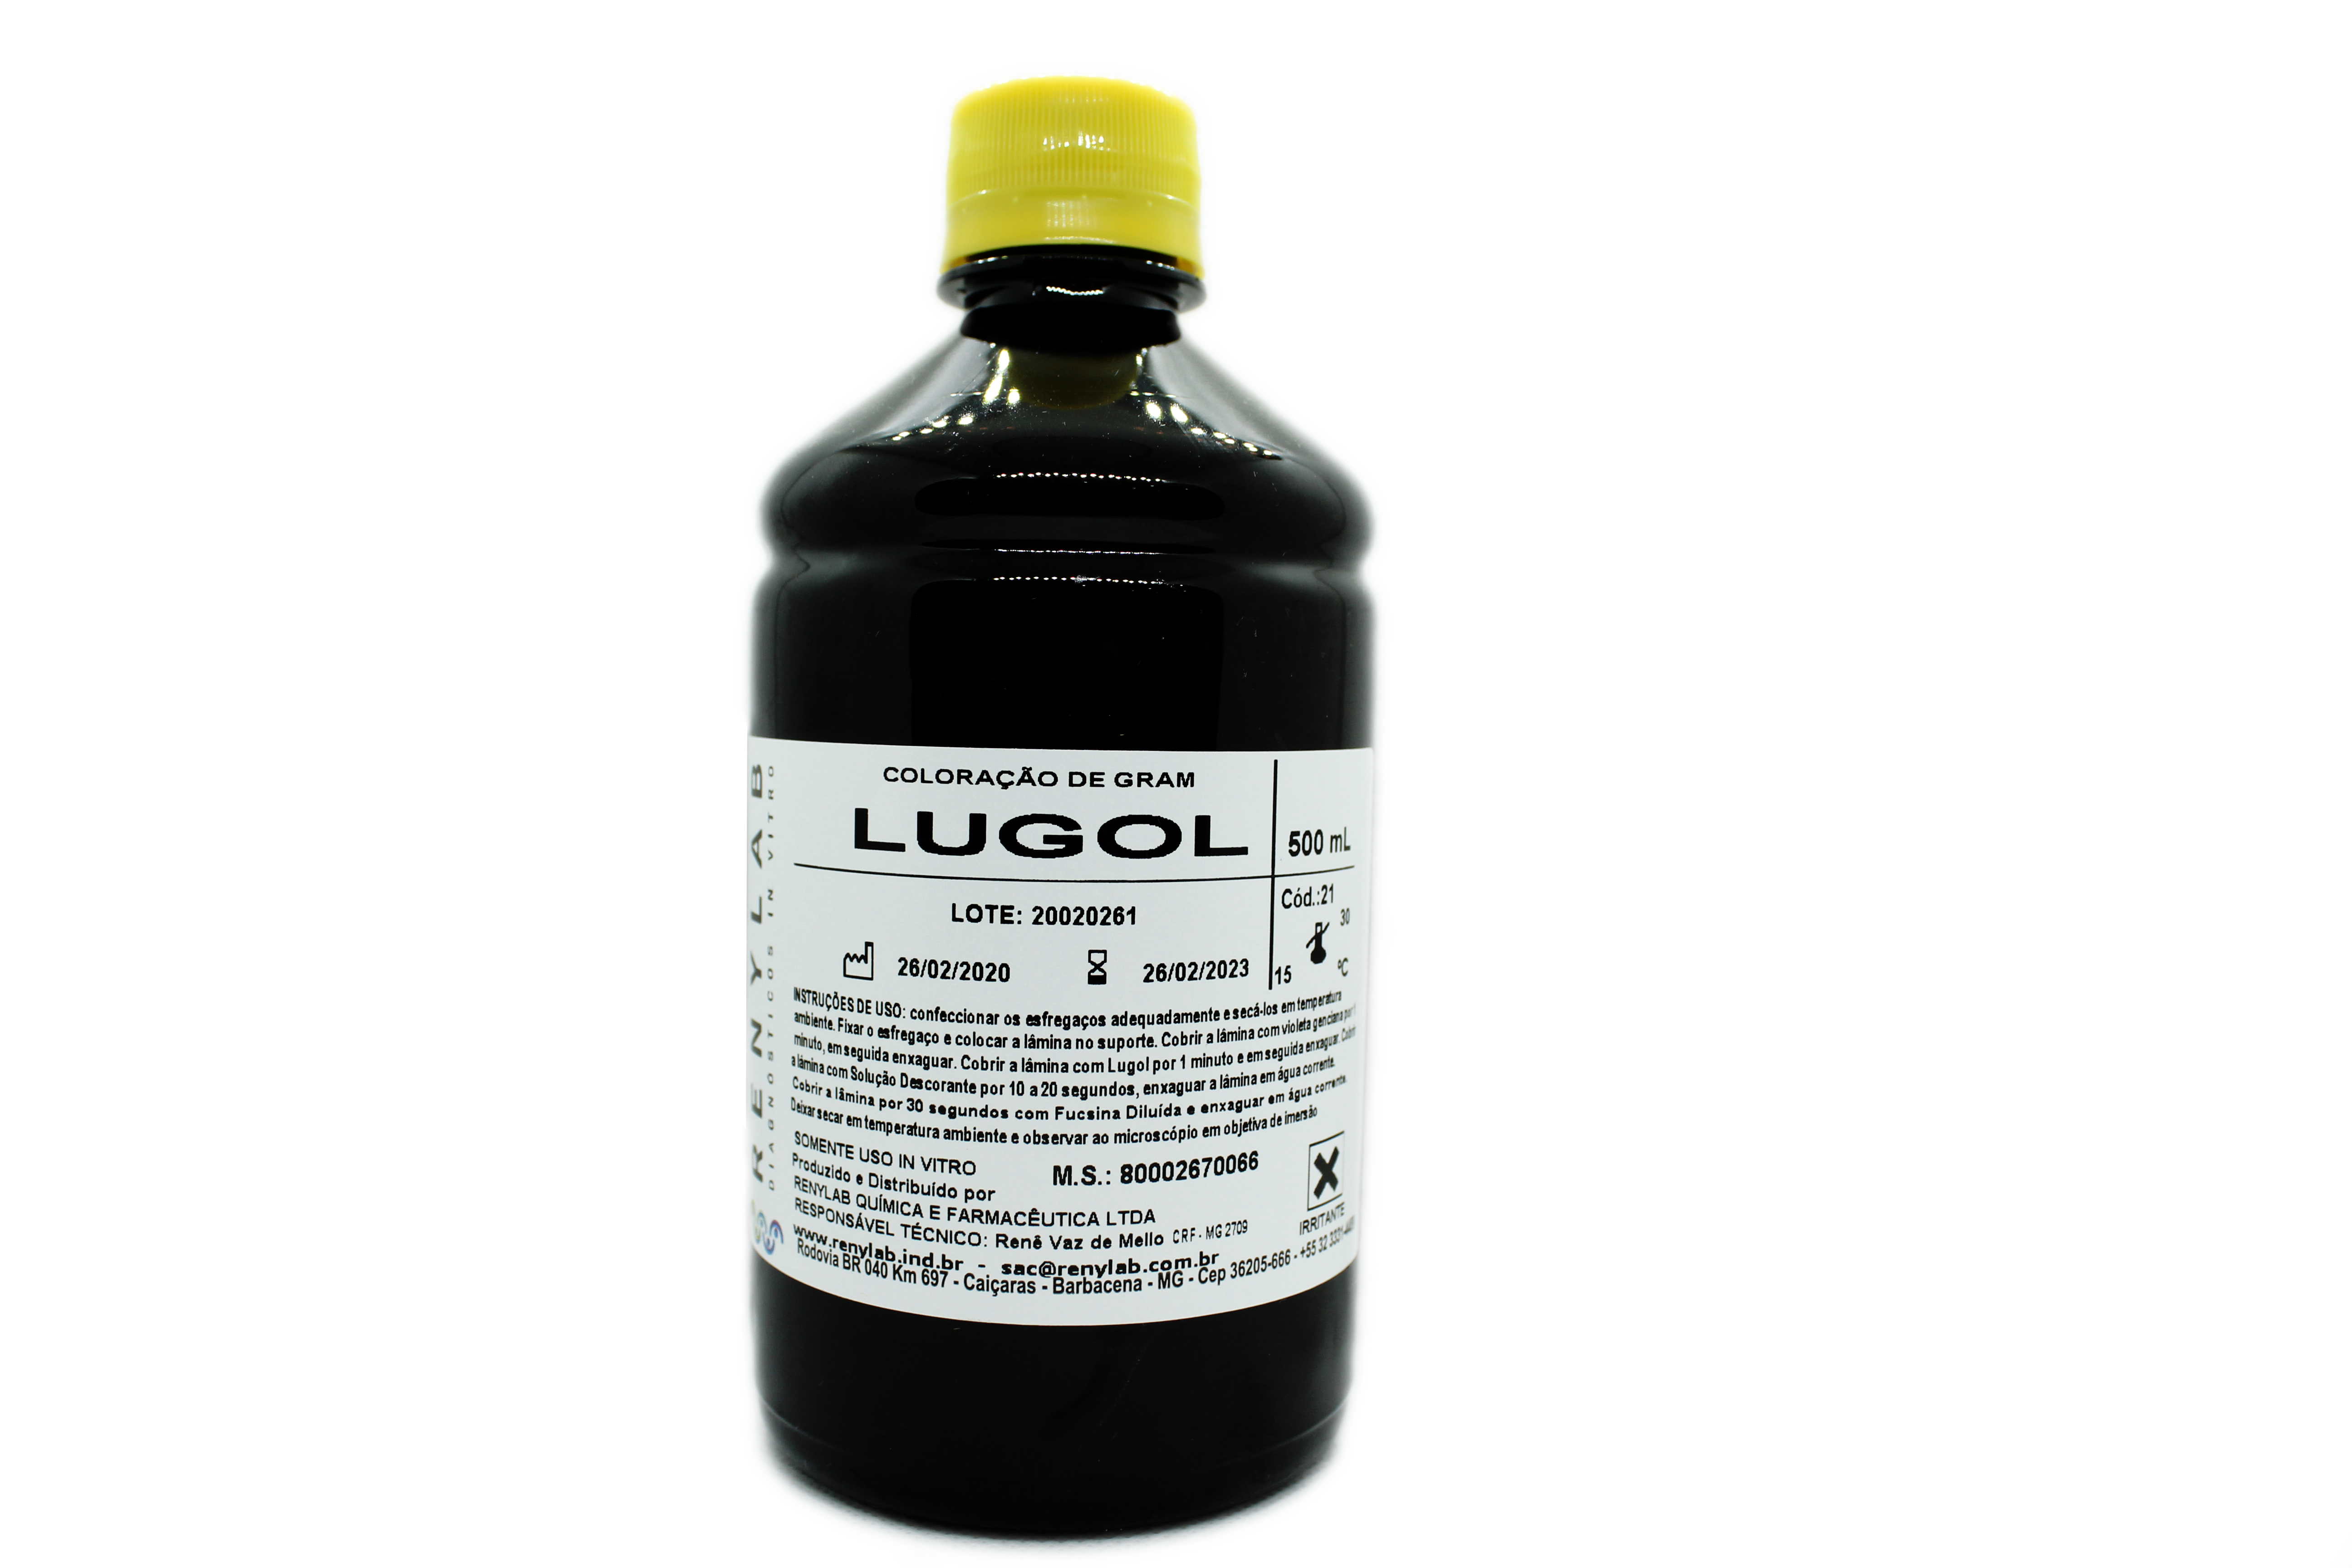 Lugol p/ GRAM